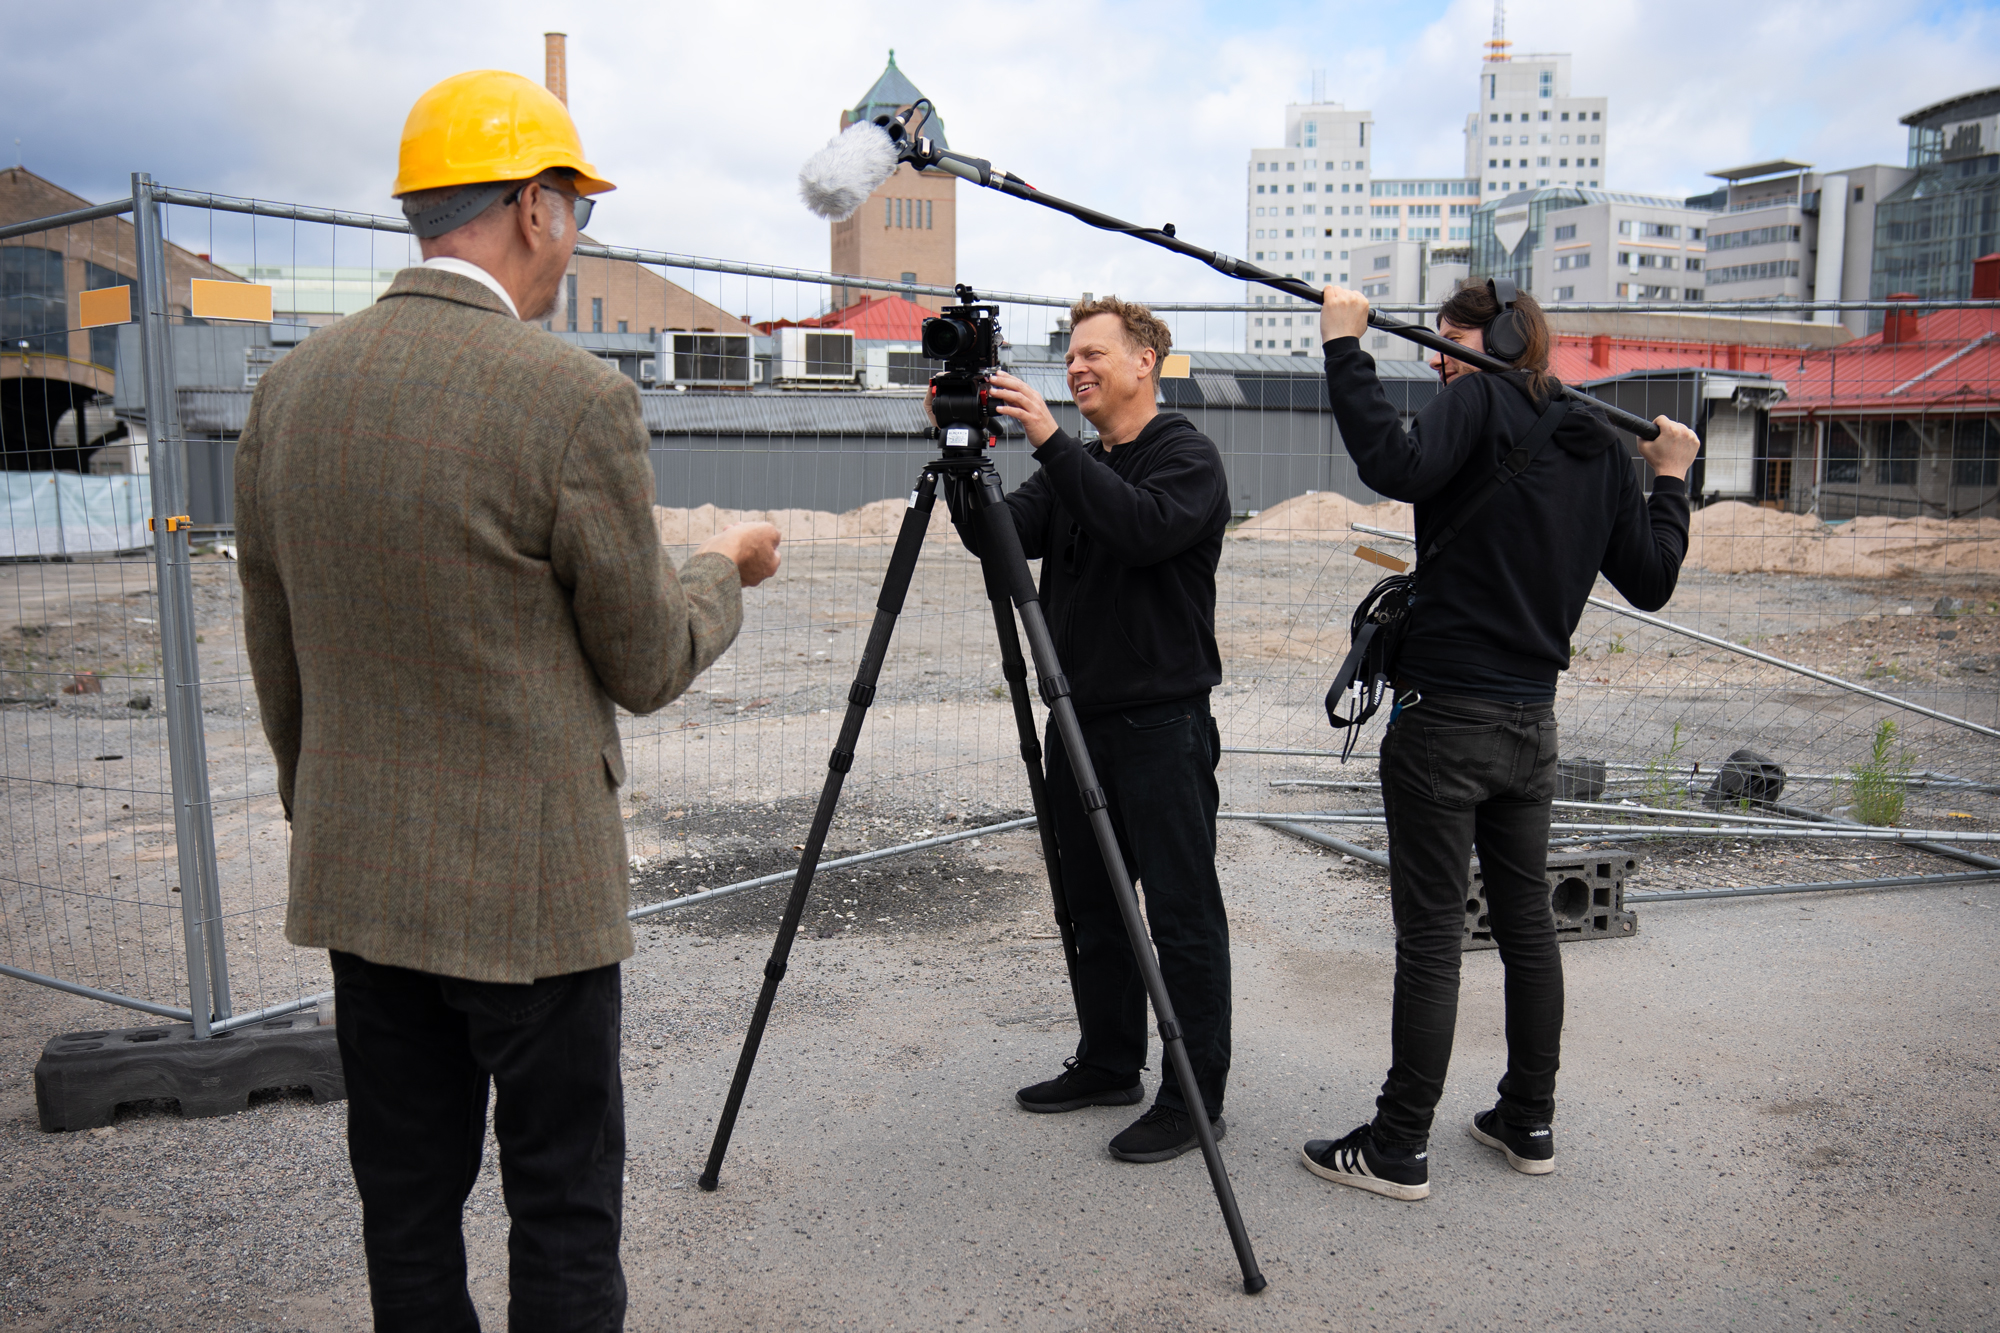 Fotograf och ljudtekniker filmar talare på byggarbetsplats